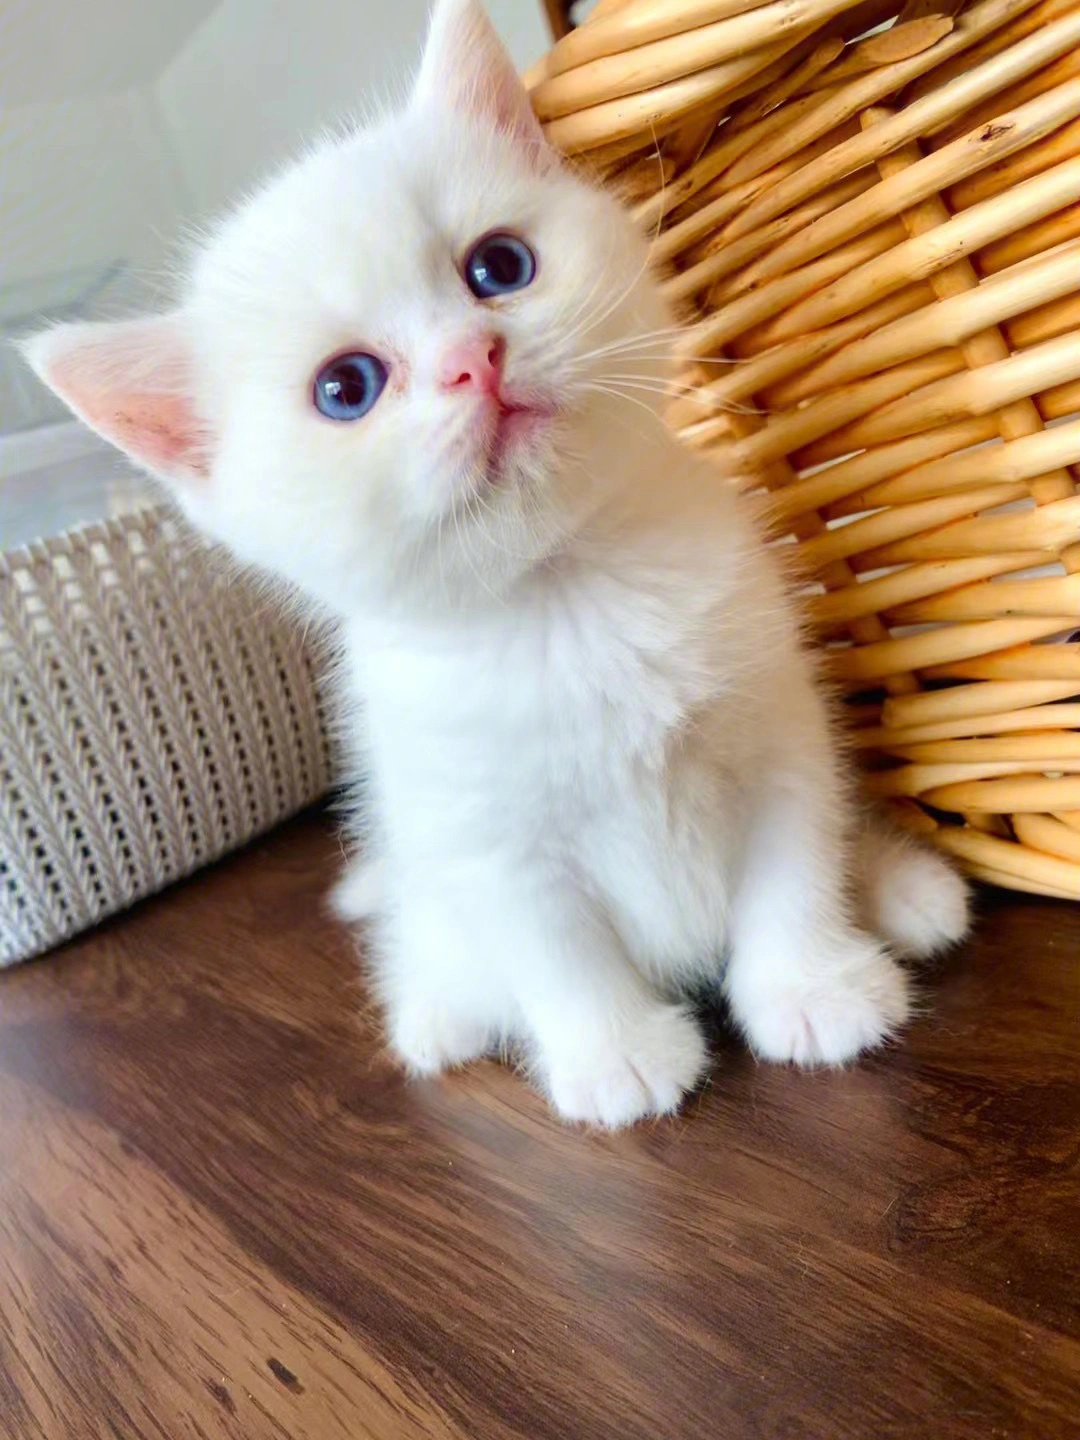 一共是两只纯白,都是小公猫,一只异瞳,一只蓝眼睛